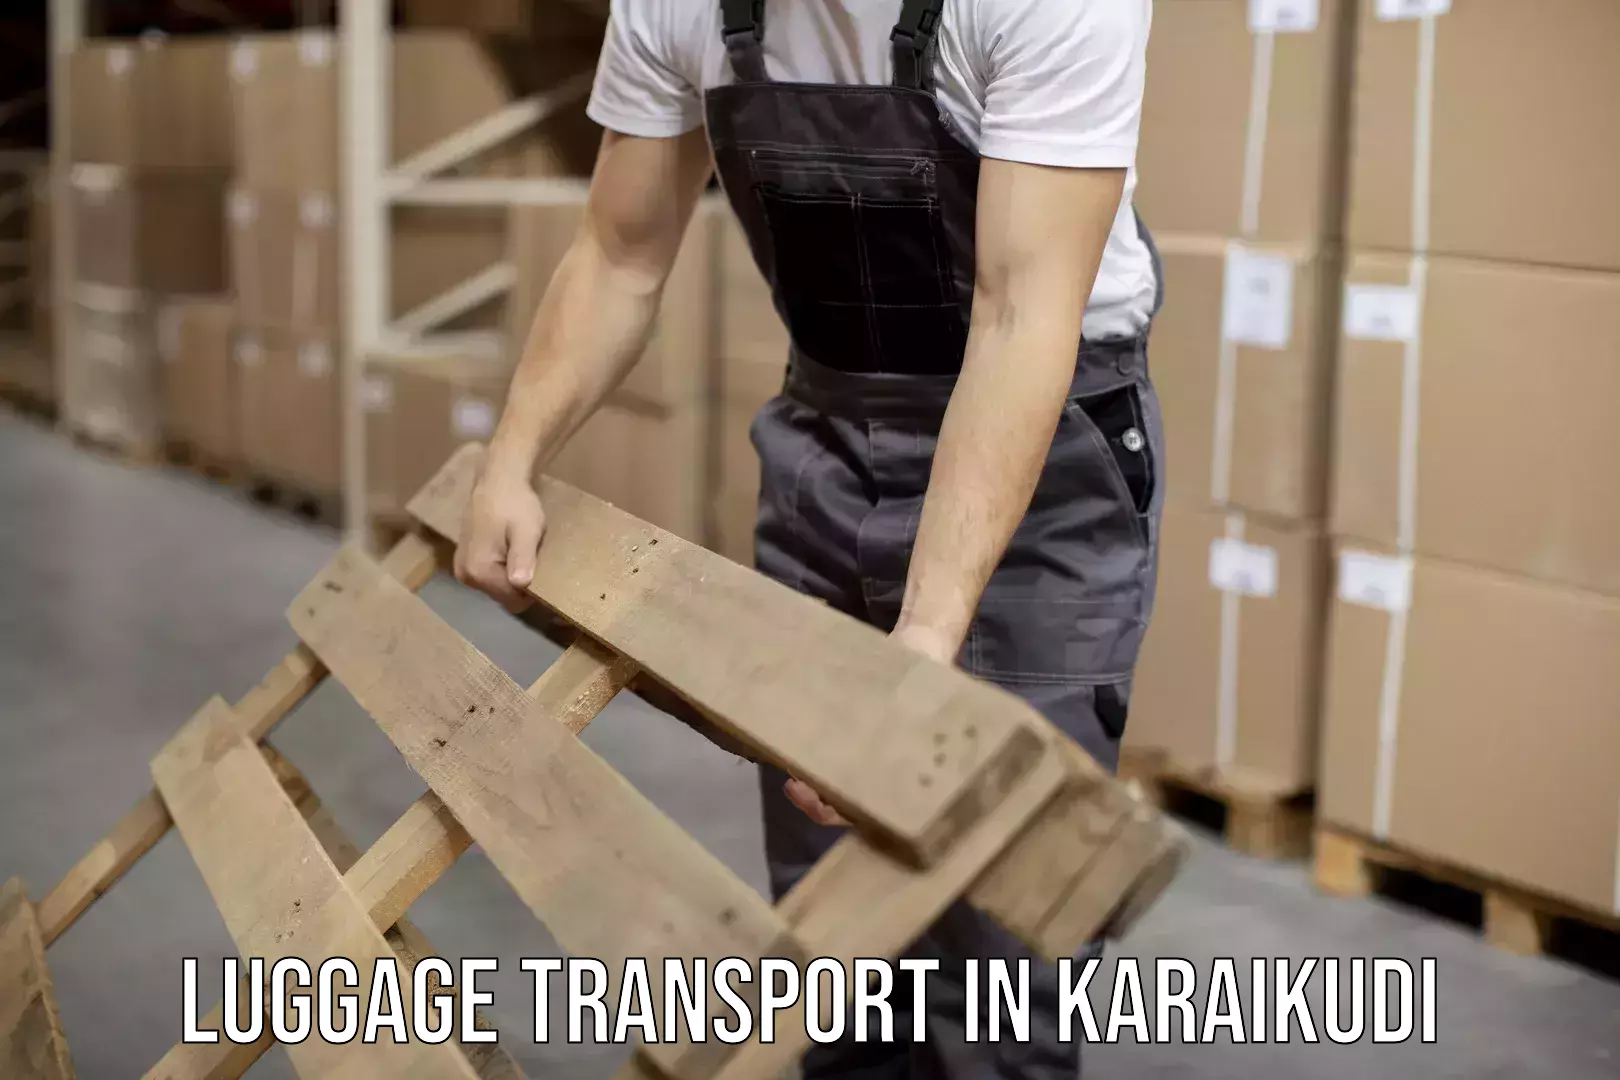 Regional luggage transport in Karaikudi